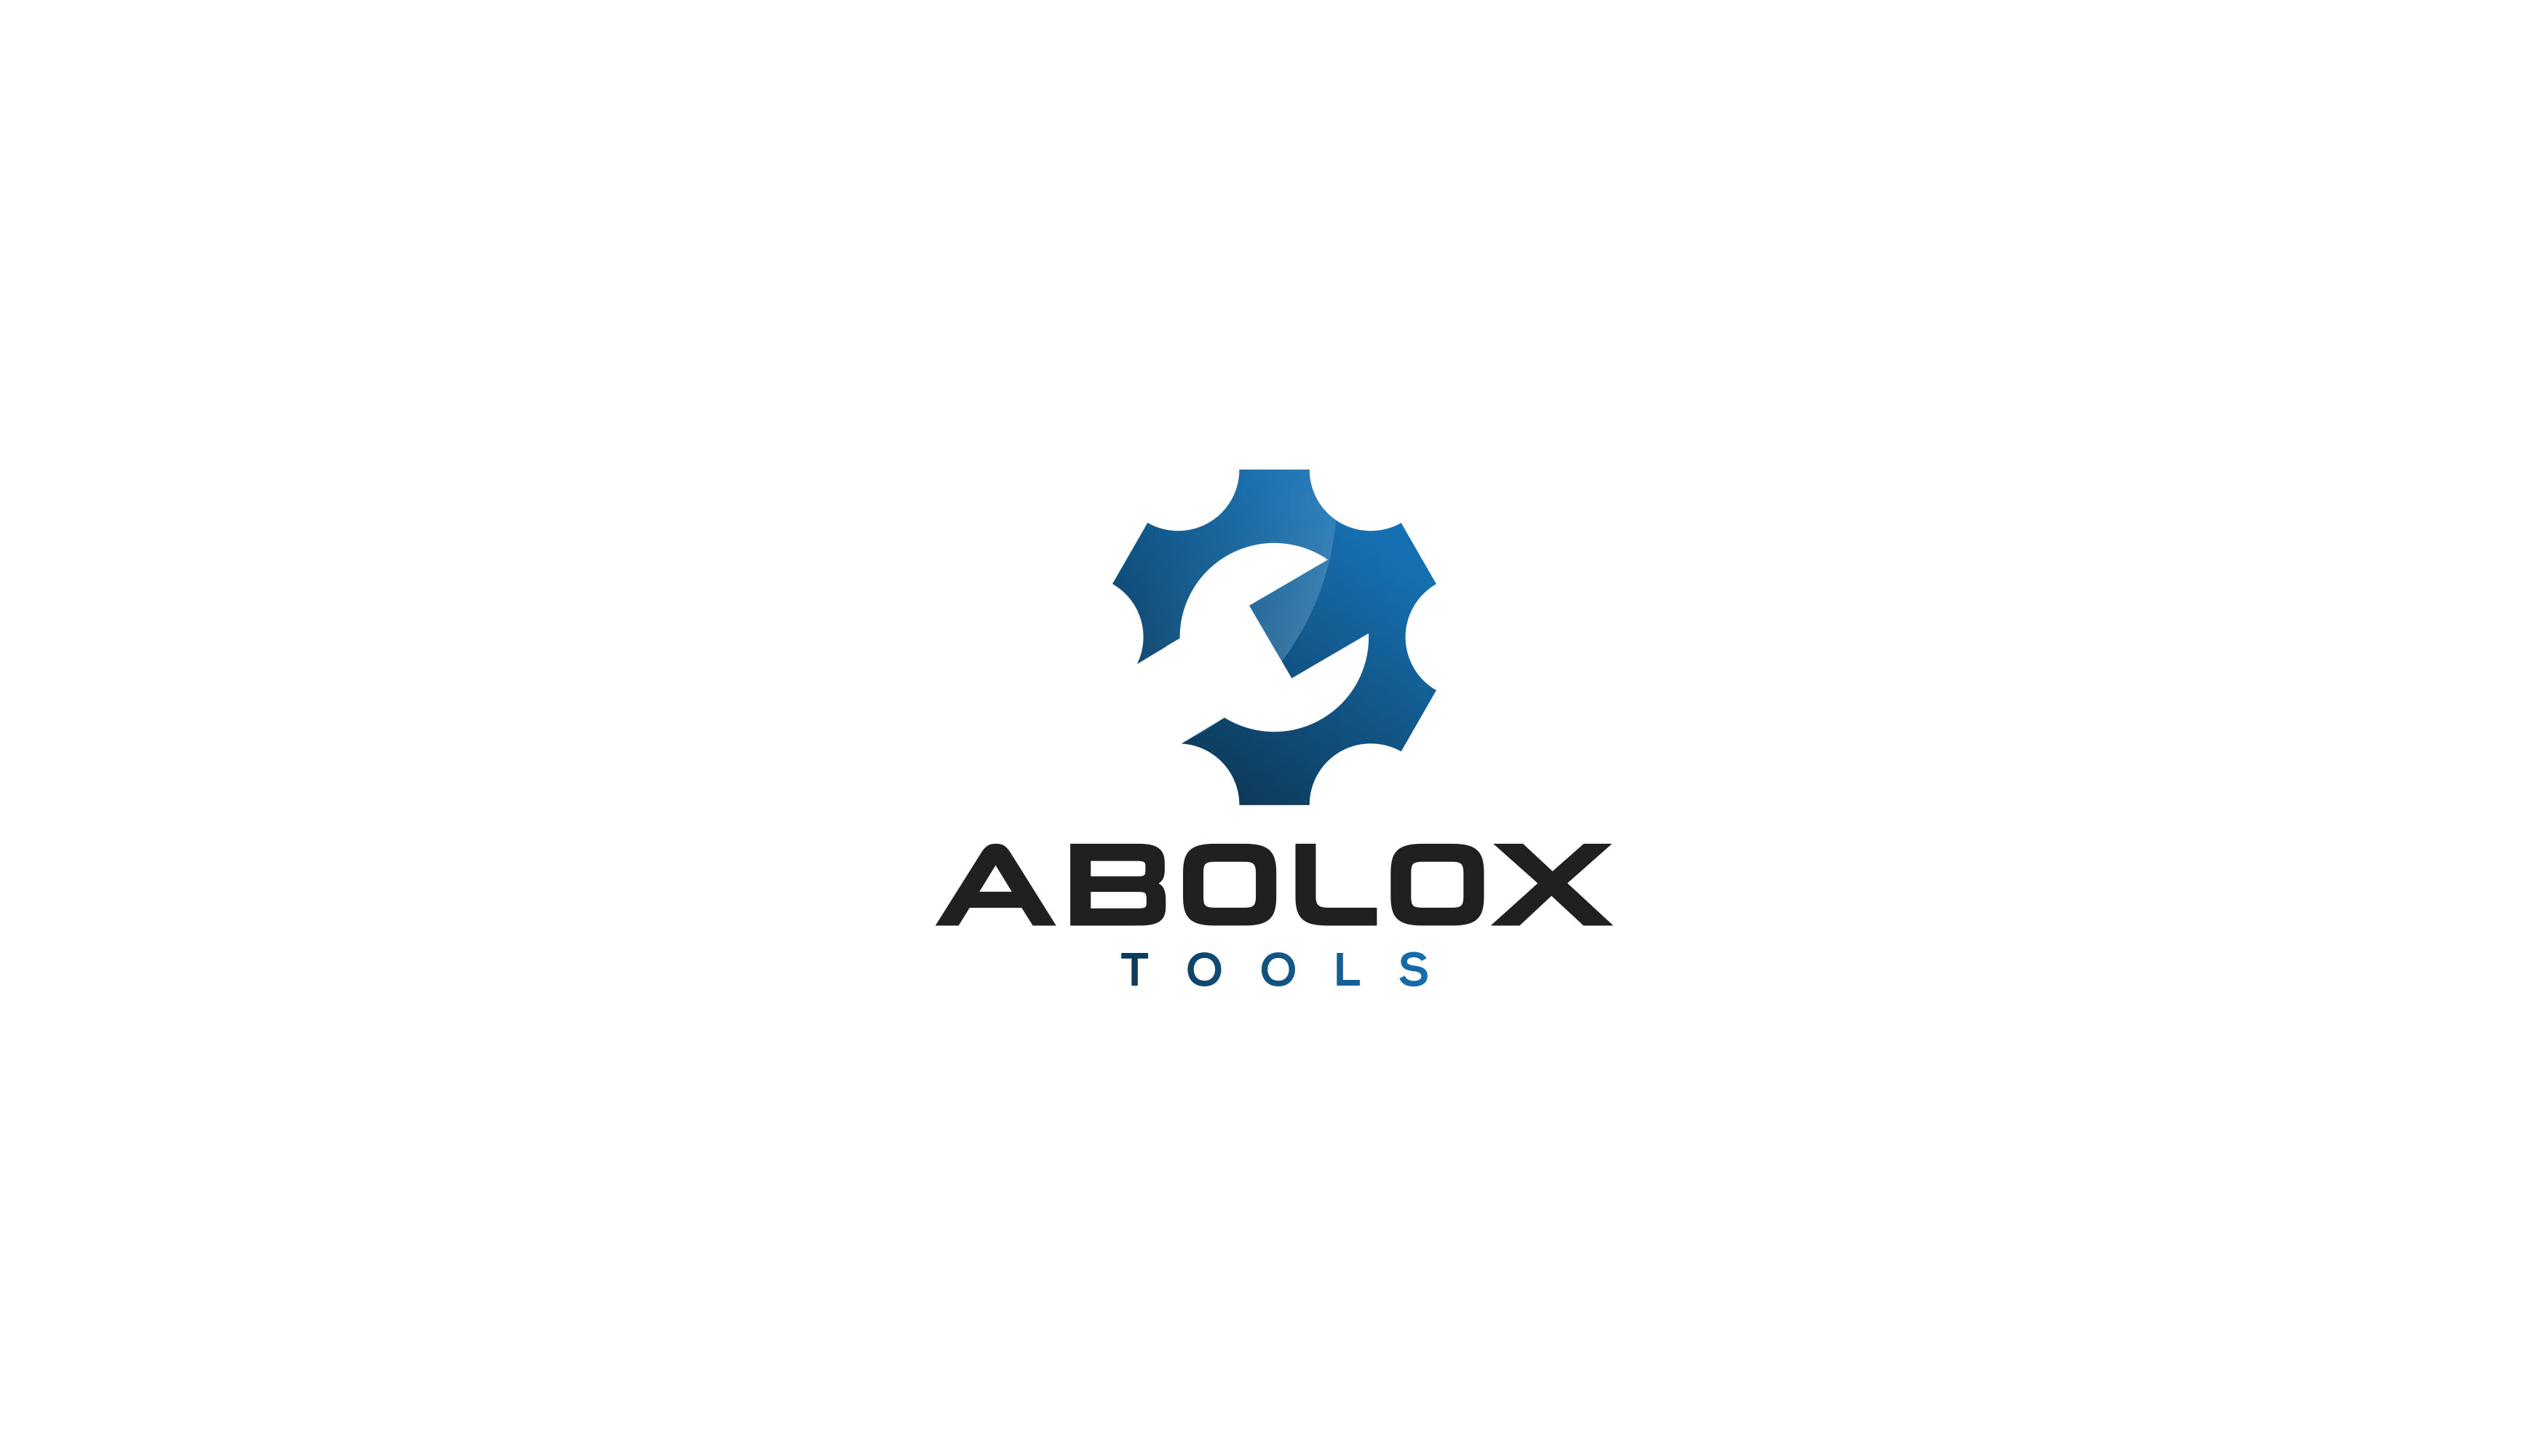 Abolox Tools Design #5